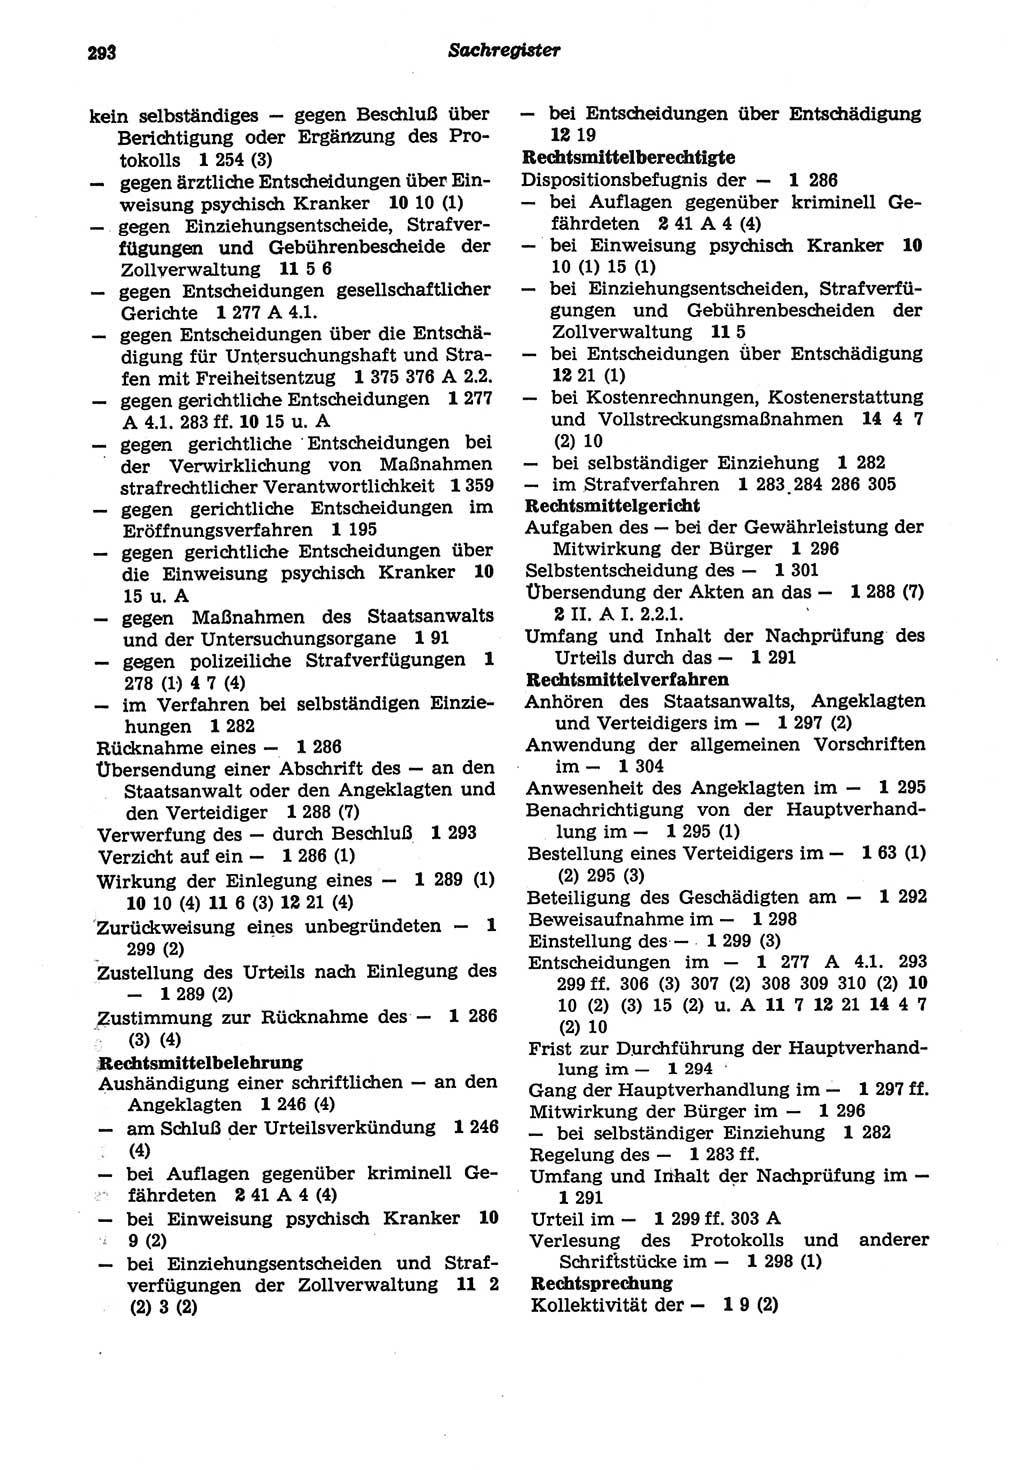 Strafprozeßordnung (StPO) der Deutschen Demokratischen Republik (DDR) sowie angrenzende Gesetze und Bestimmungen 1977, Seite 293 (StPO DDR Ges. Best. 1977, S. 293)